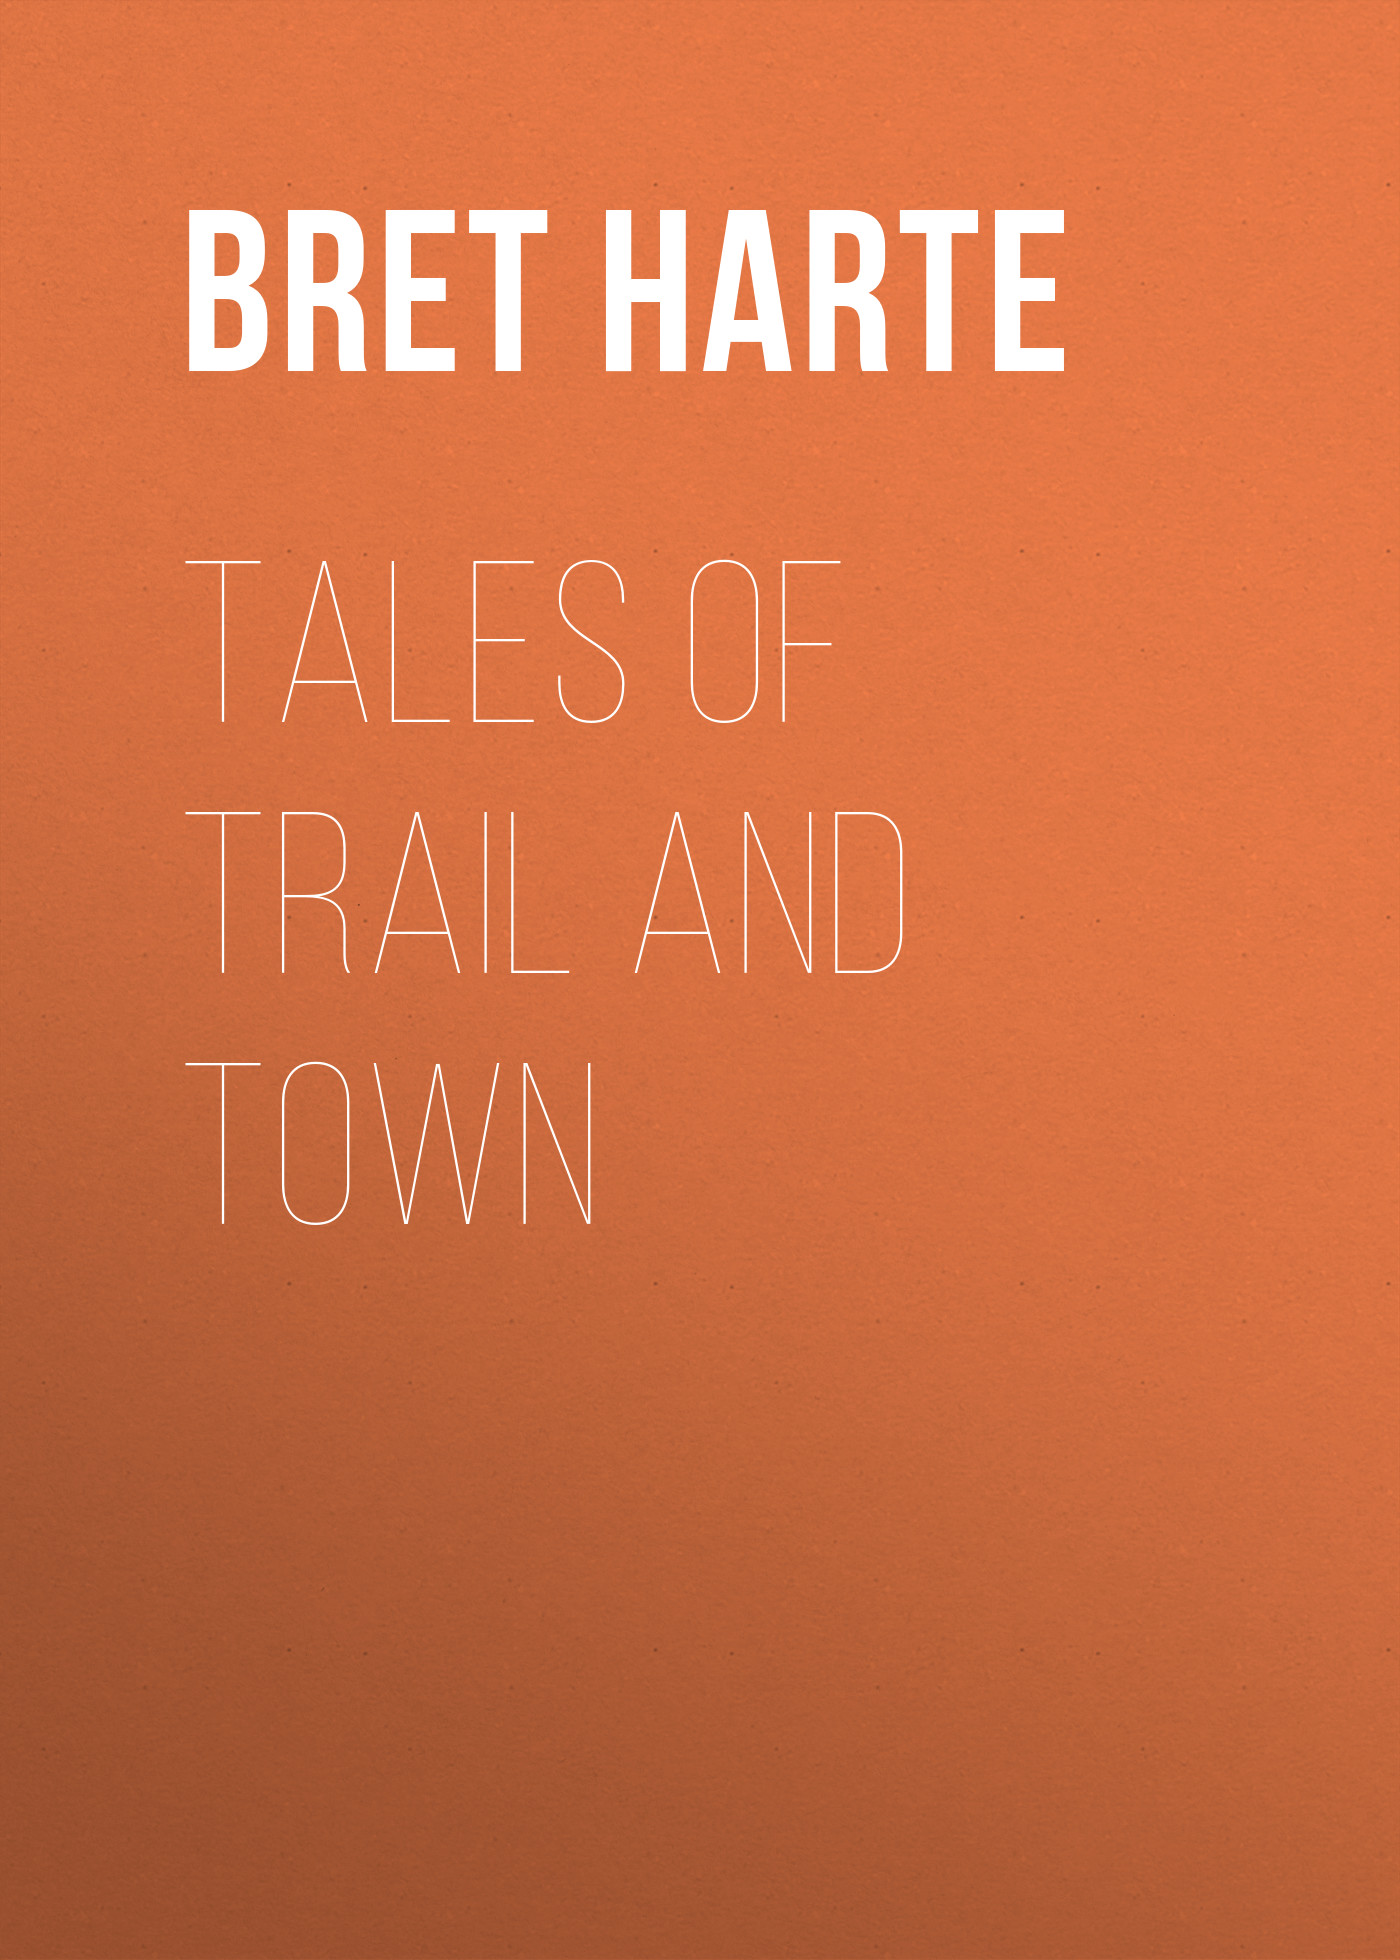 Книга Tales of Trail and Town из серии , созданная Bret Harte, может относится к жанру Зарубежная фантастика, Литература 19 века, Зарубежная старинная литература, Зарубежная классика. Стоимость электронной книги Tales of Trail and Town с идентификатором 36322132 составляет 0 руб.